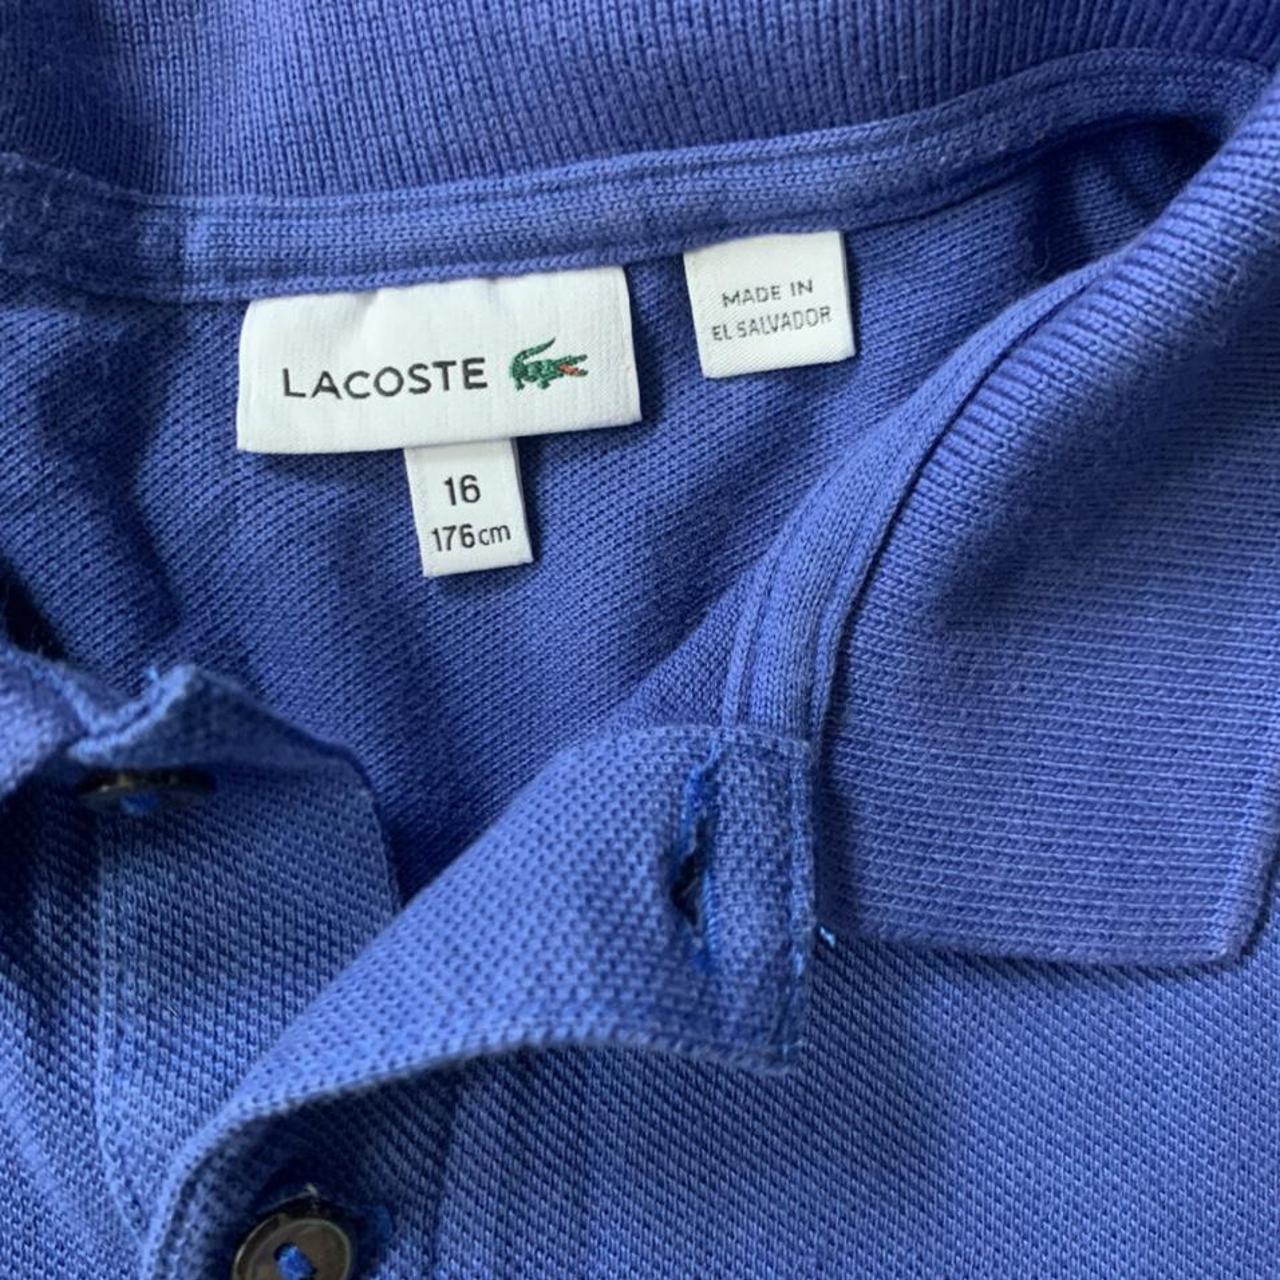 men’s lacoste polo shirt, boys large/men’s xs - Depop